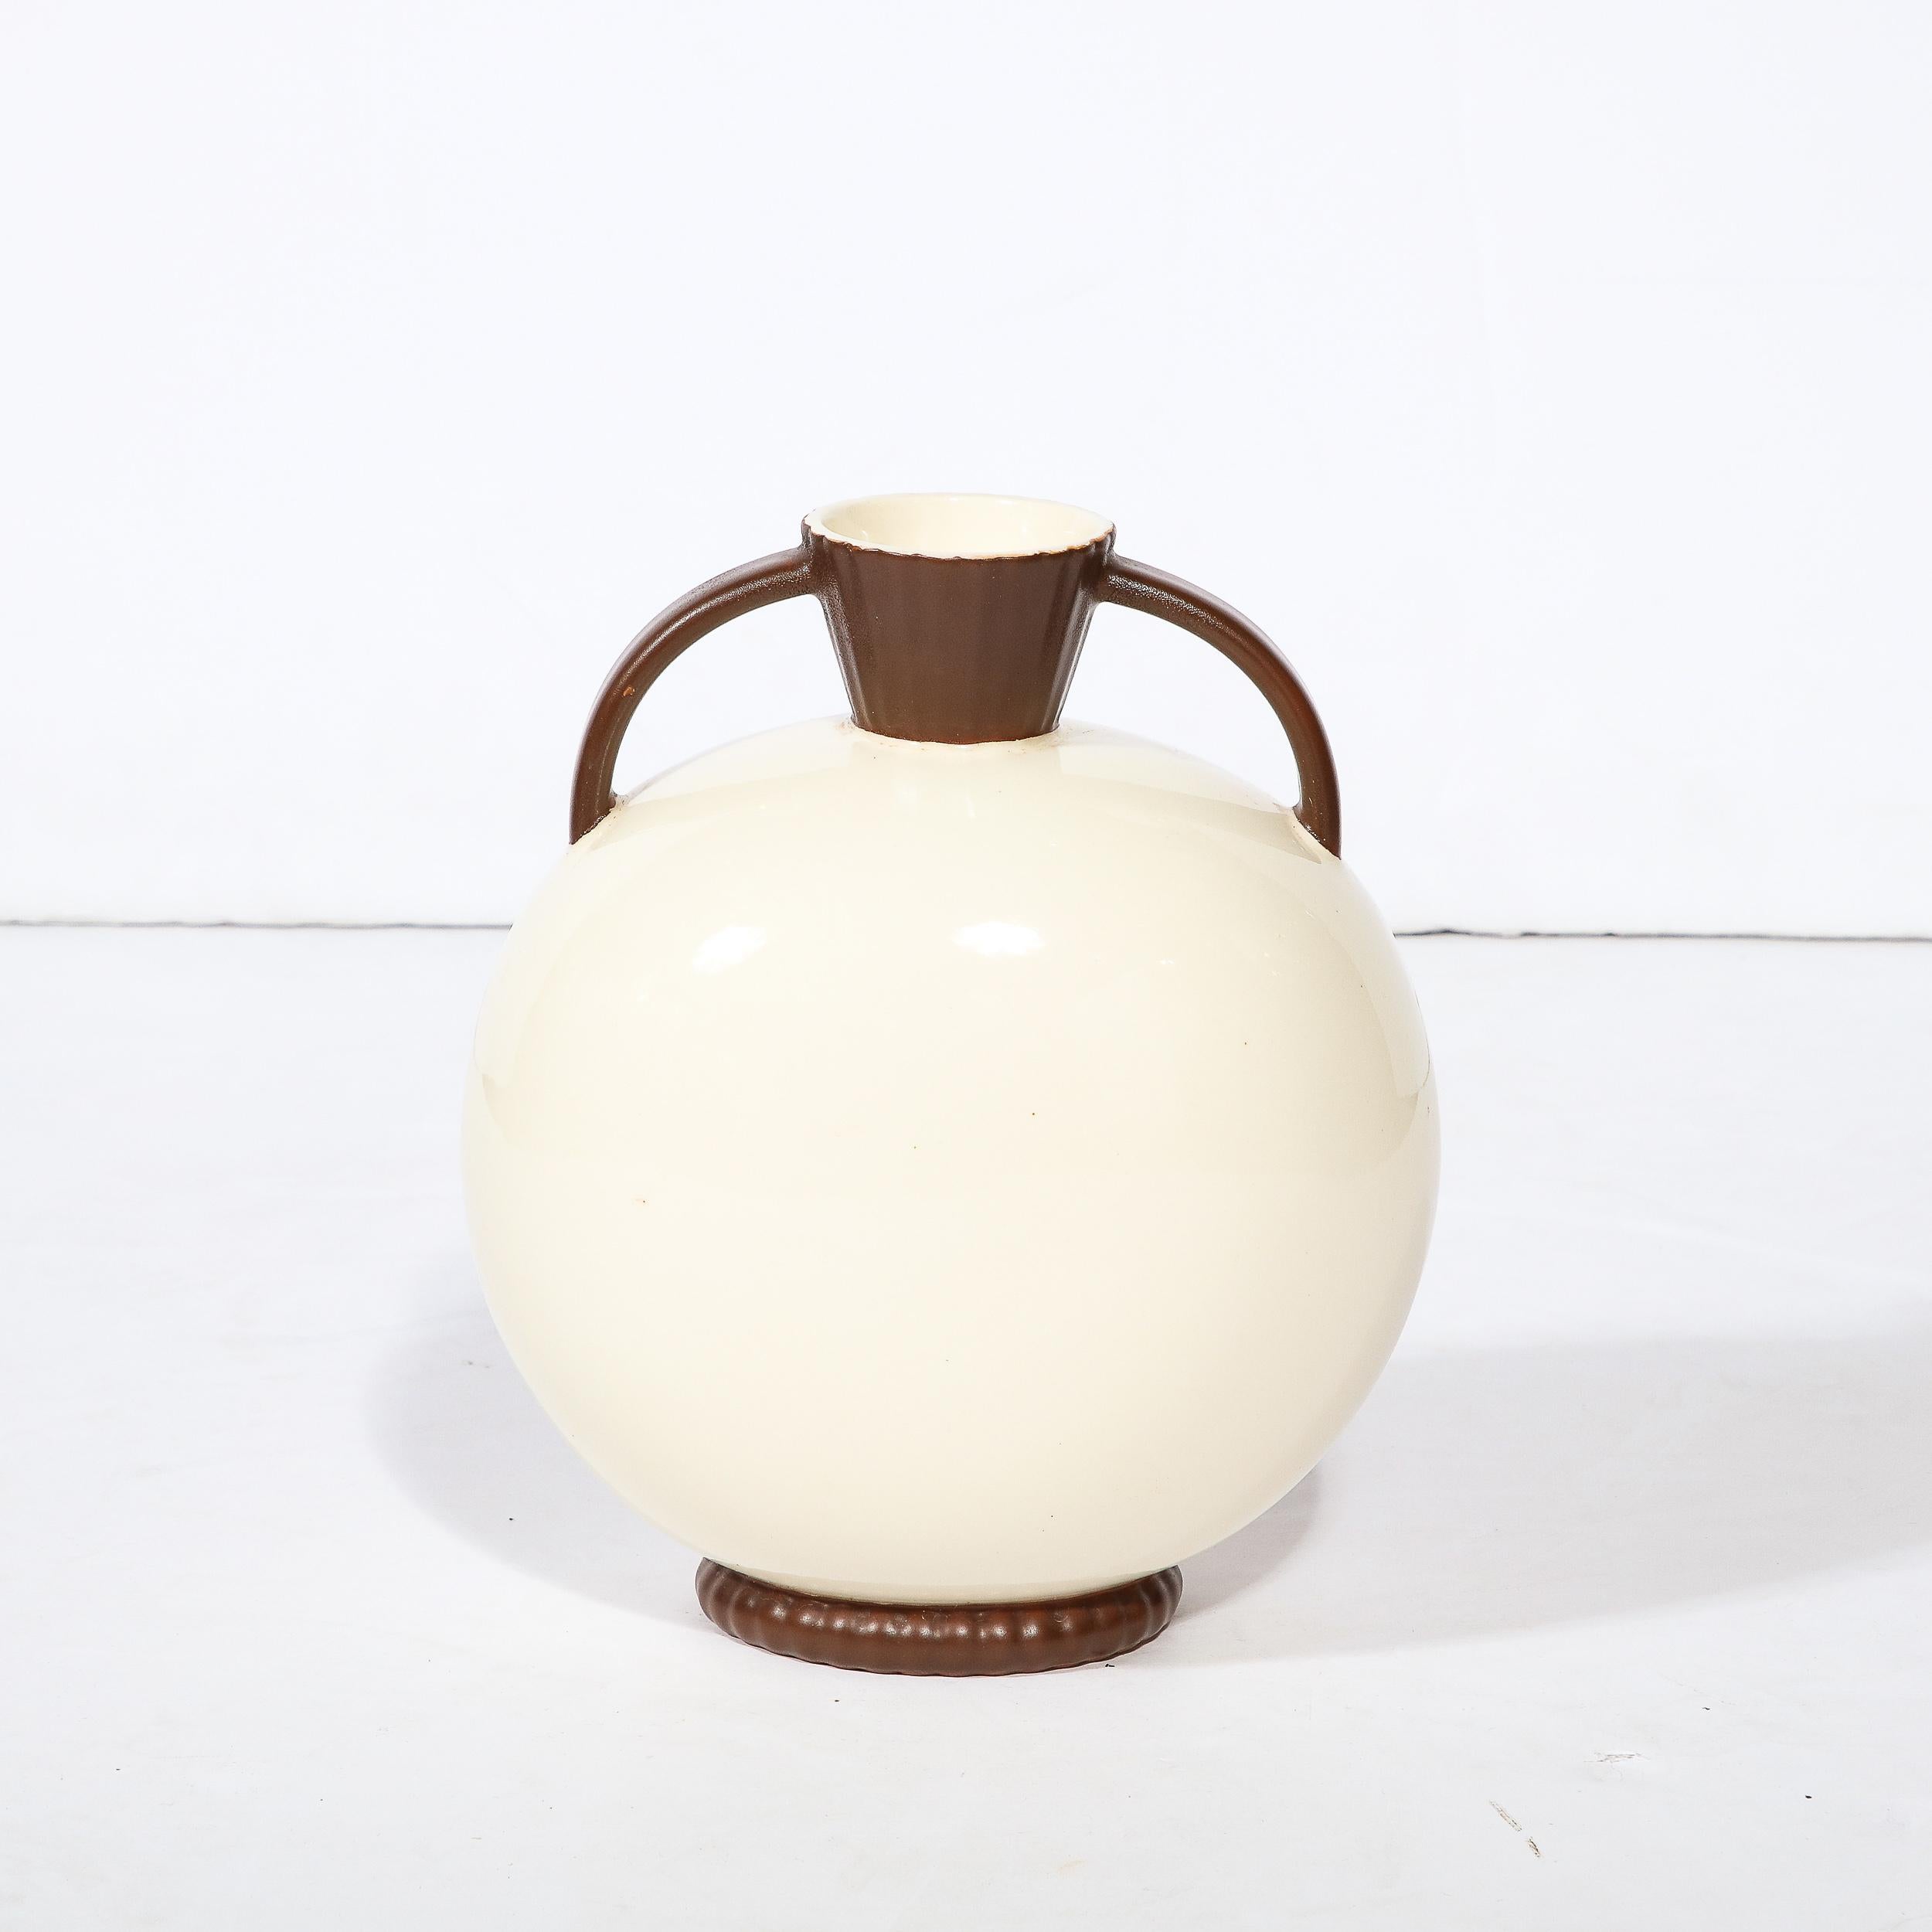 Cet élégant vase en céramique Art Déco a été réalisé par l'atelier estimé de Royal Crown en Tchécoslovaquie vers 1930. Suggérant une interprétation moderne du vase amphora grec classique, la pièce présente un corps sphérique rond reposant sur une